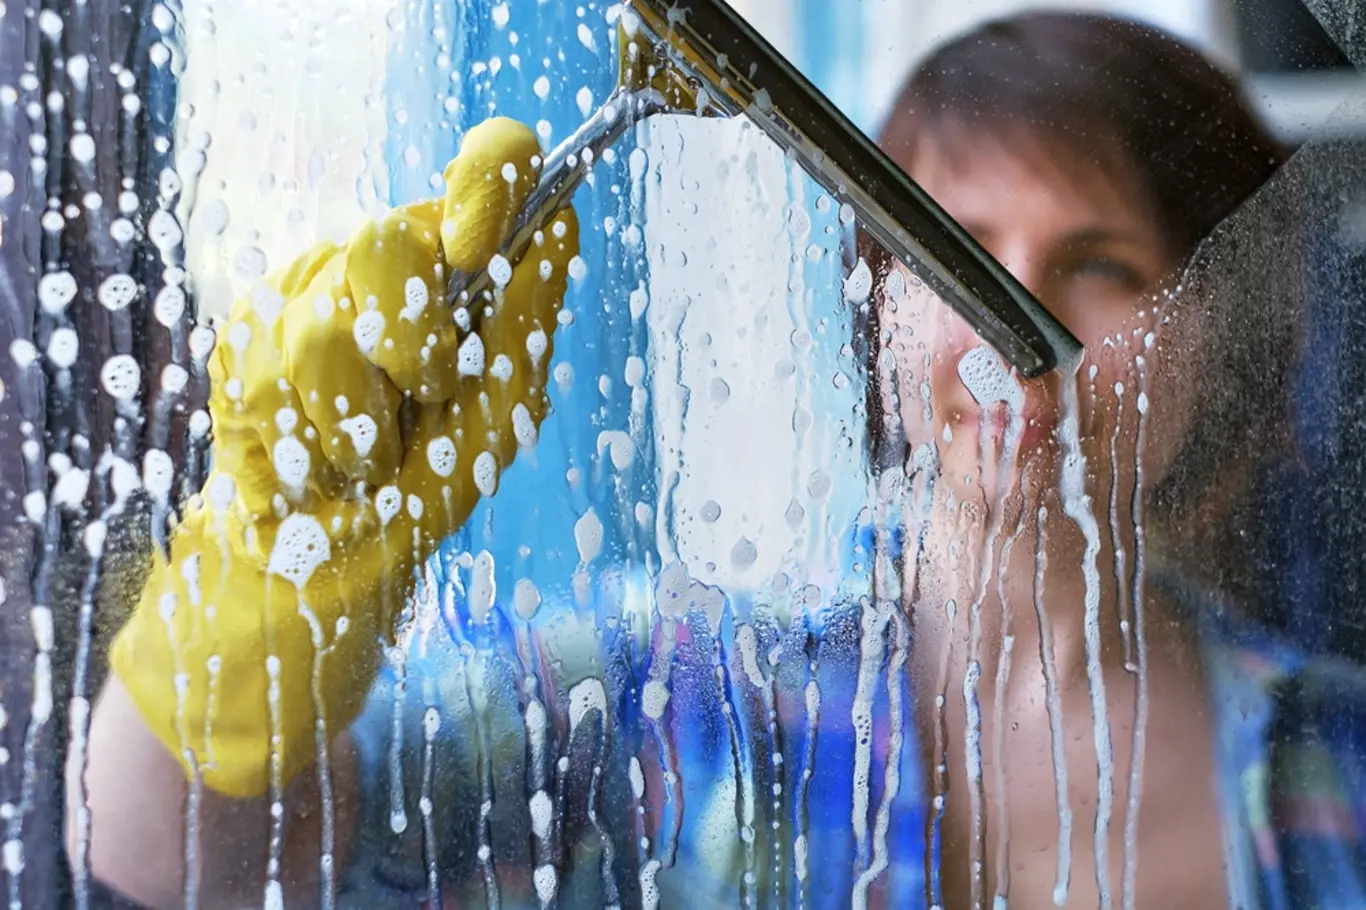 Za vhodné podmínky k mytí oken je považováno polojasno a teplota nad 5 °C.